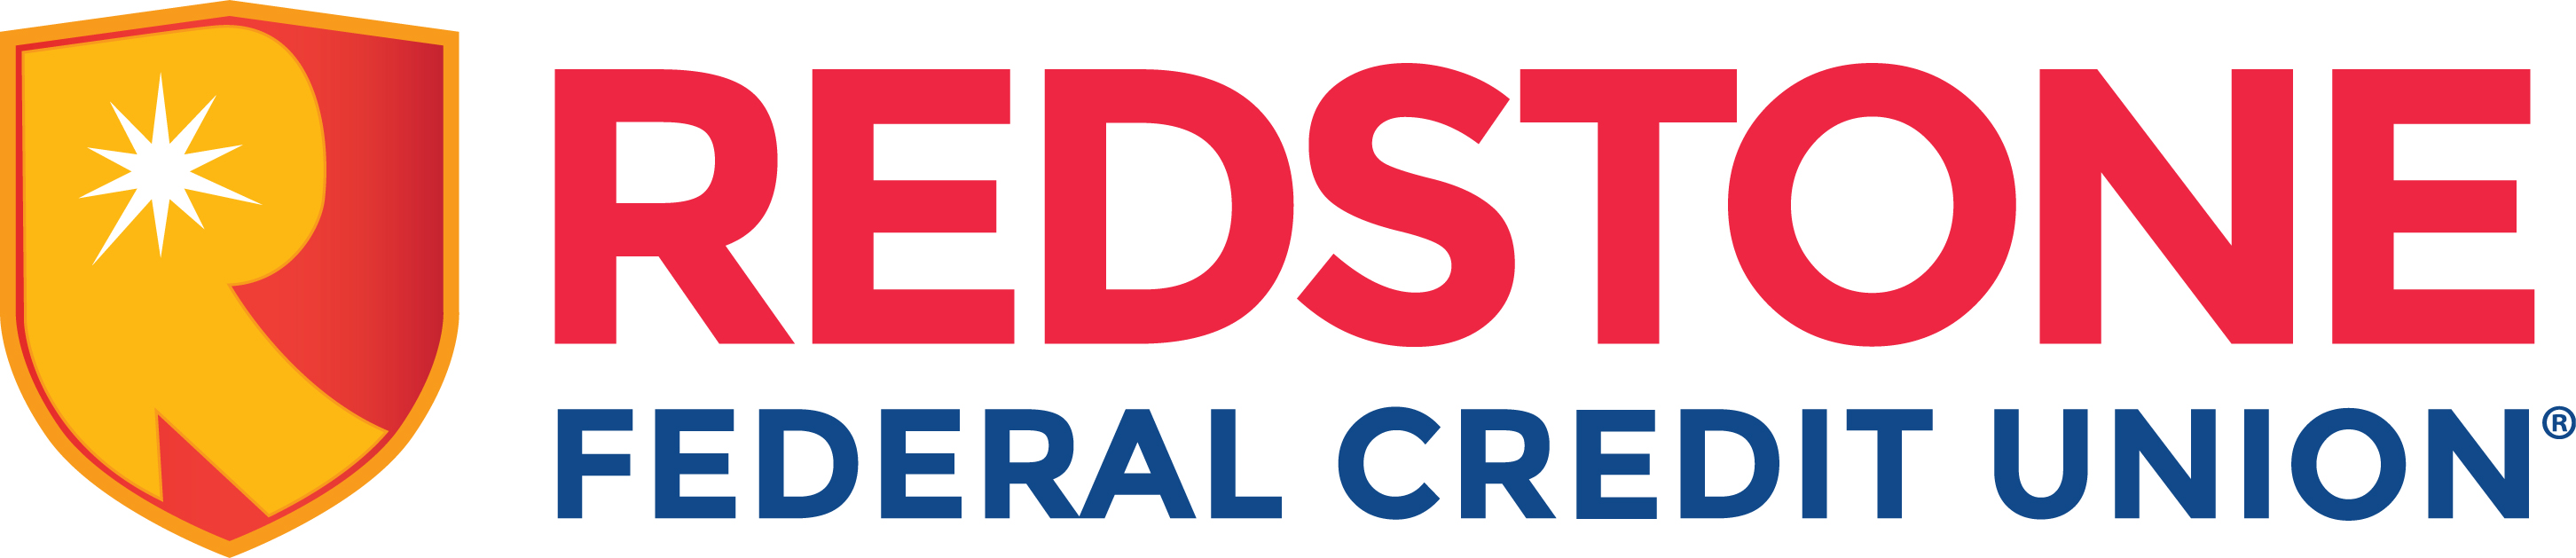 RedStone Federal Credit Union Logo